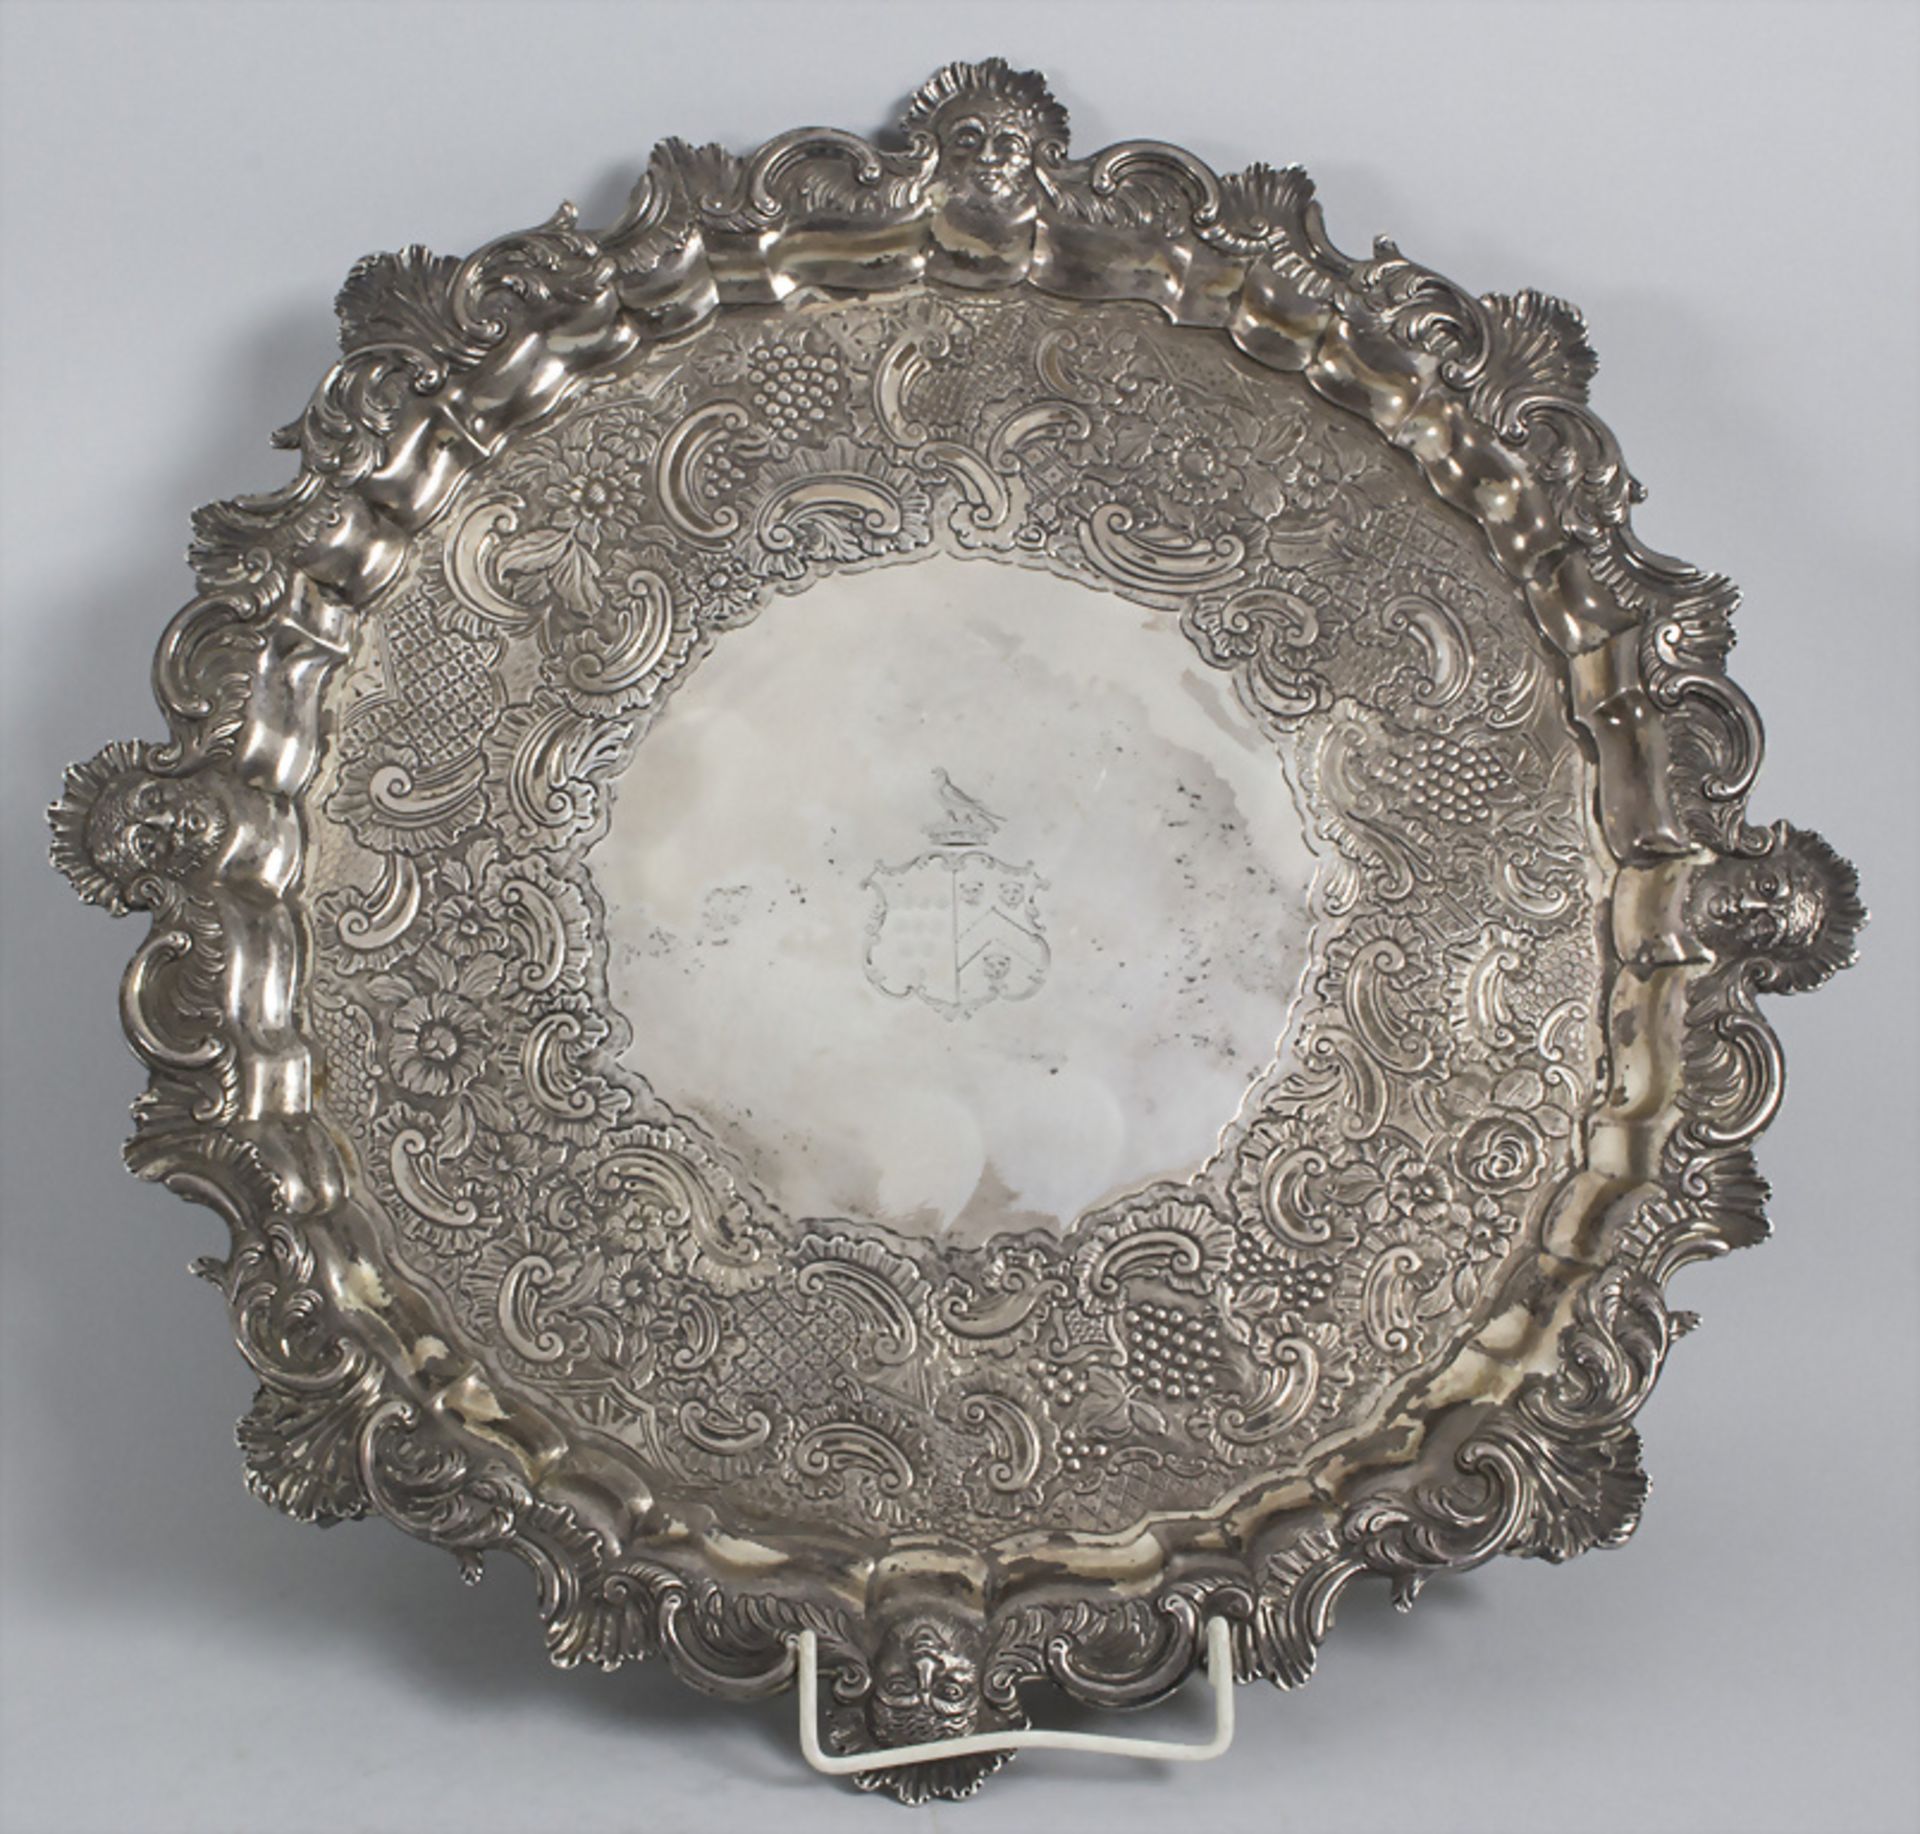 Großes Tablett / A large silver tray, John Carter II, London, 1774